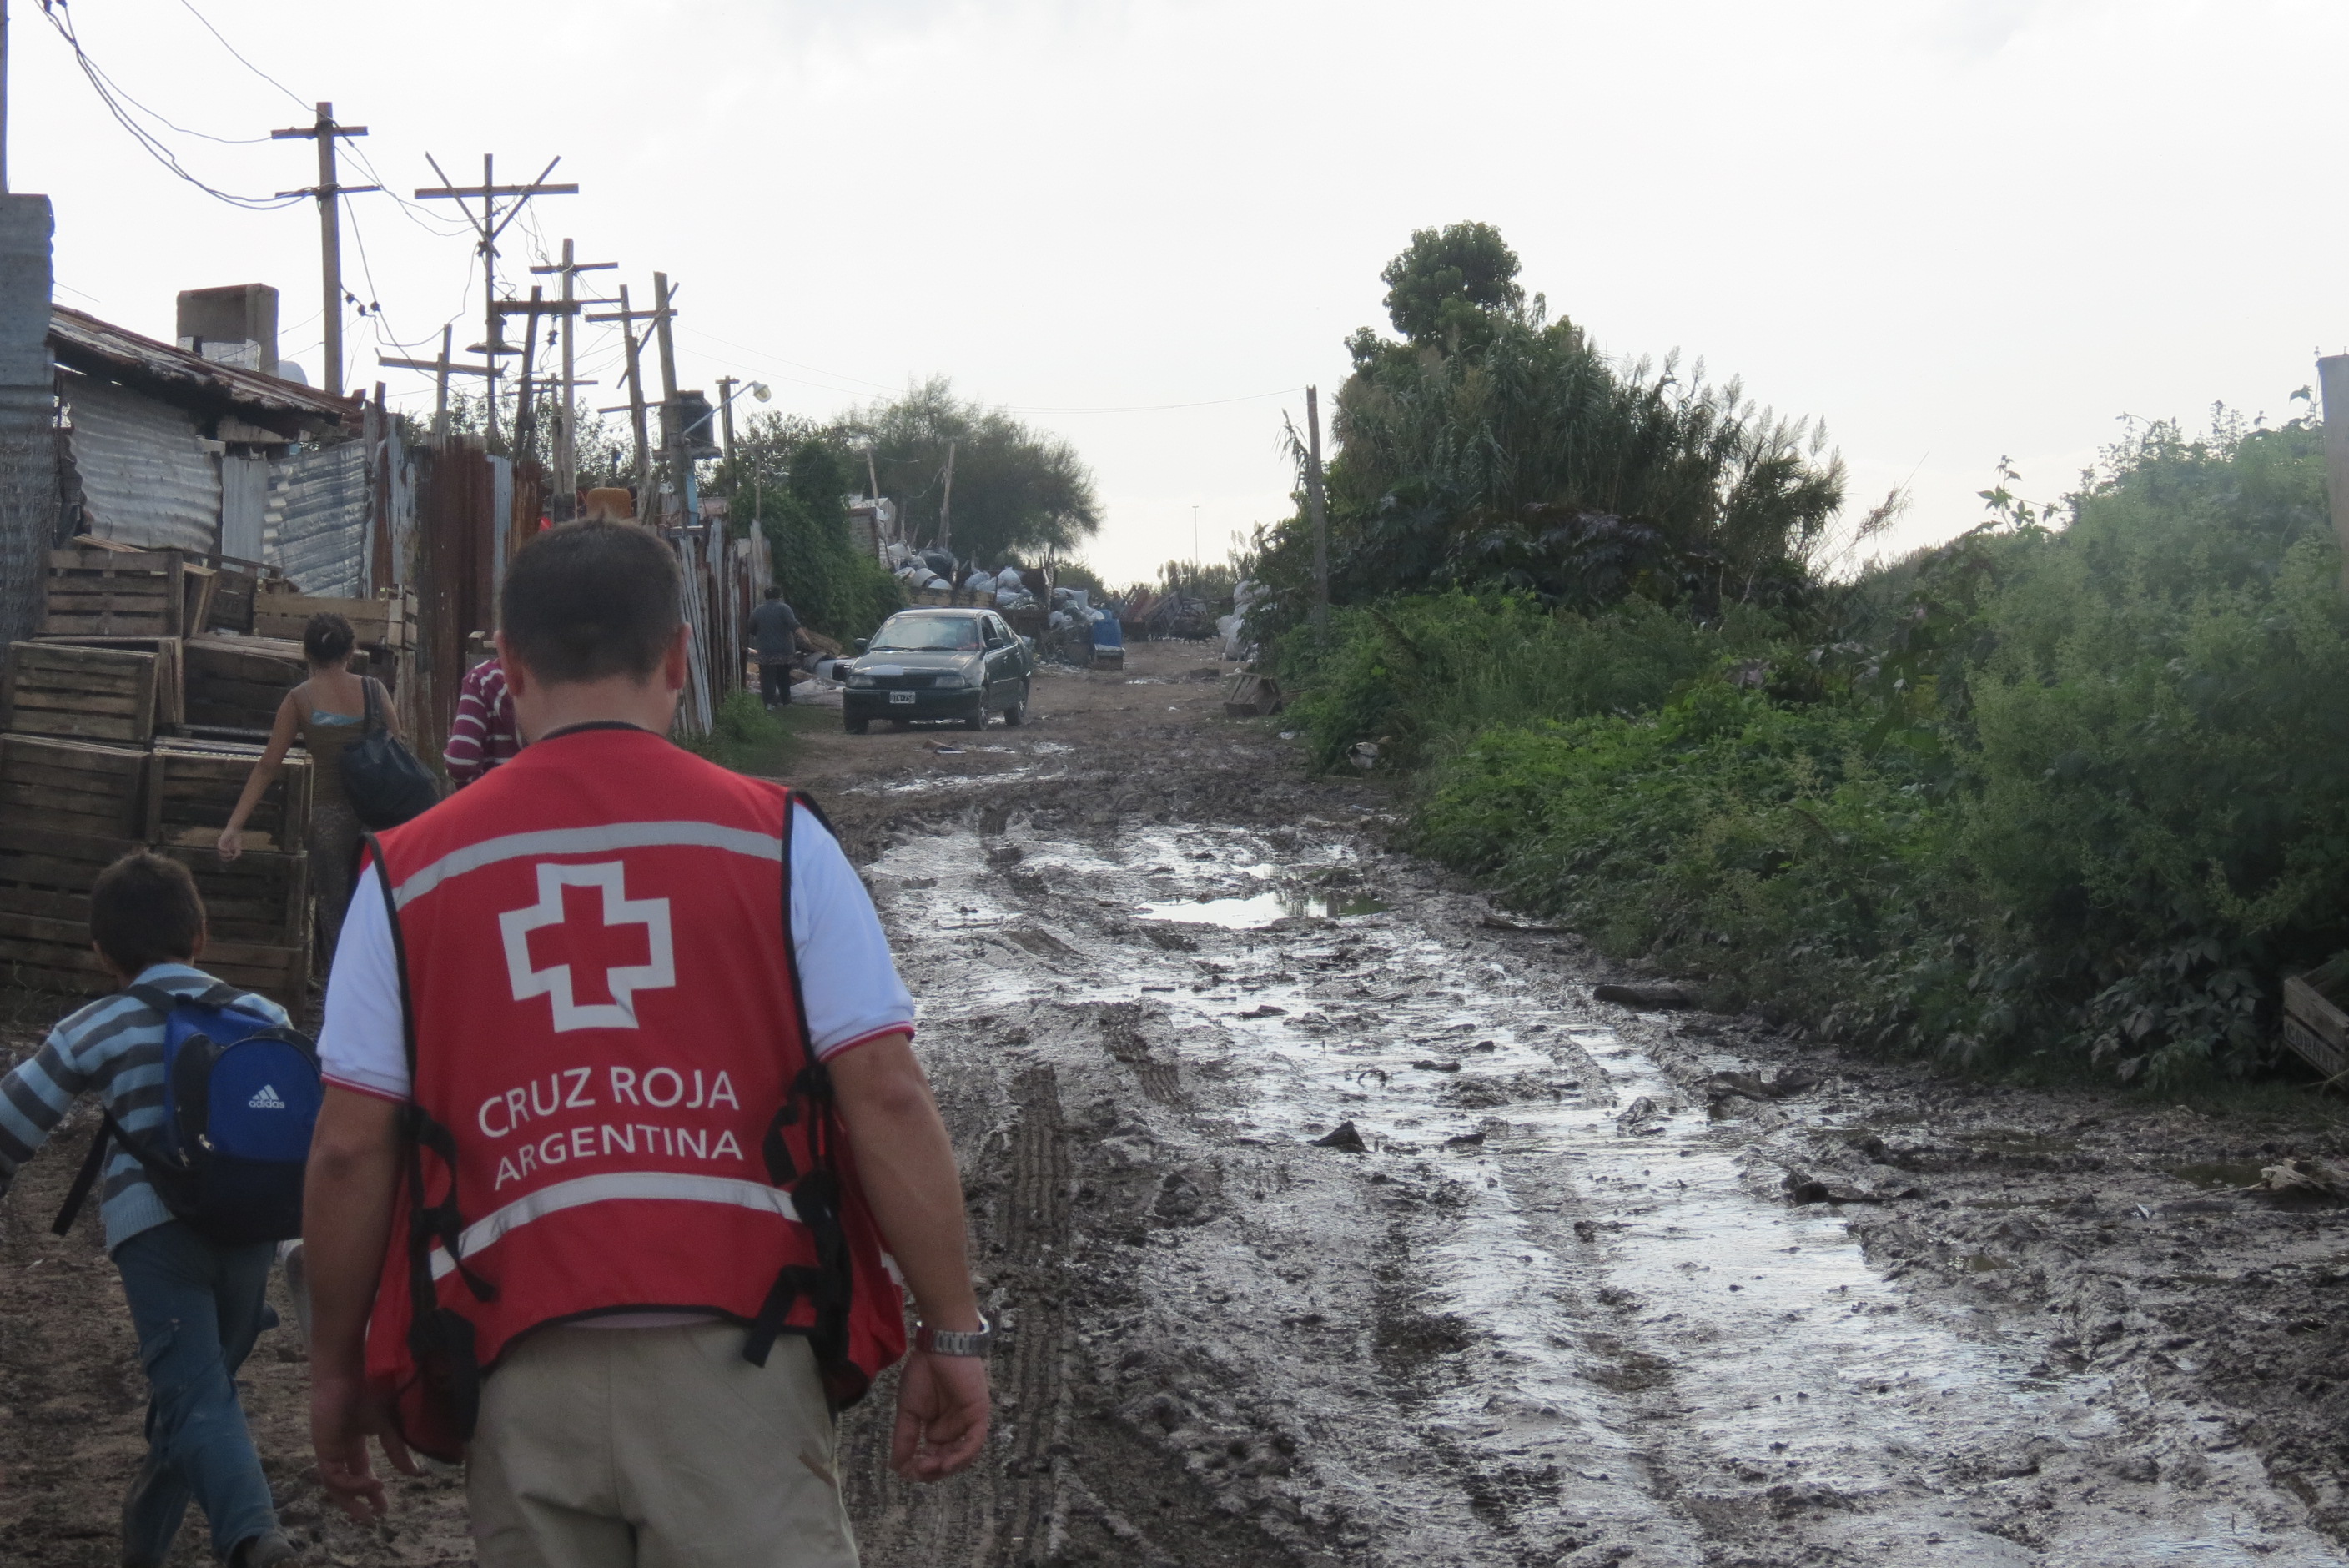 La Cruz Roja Argentina lanza la primera colecta nacional para reforzar su trabajo en zonas vulnerables  